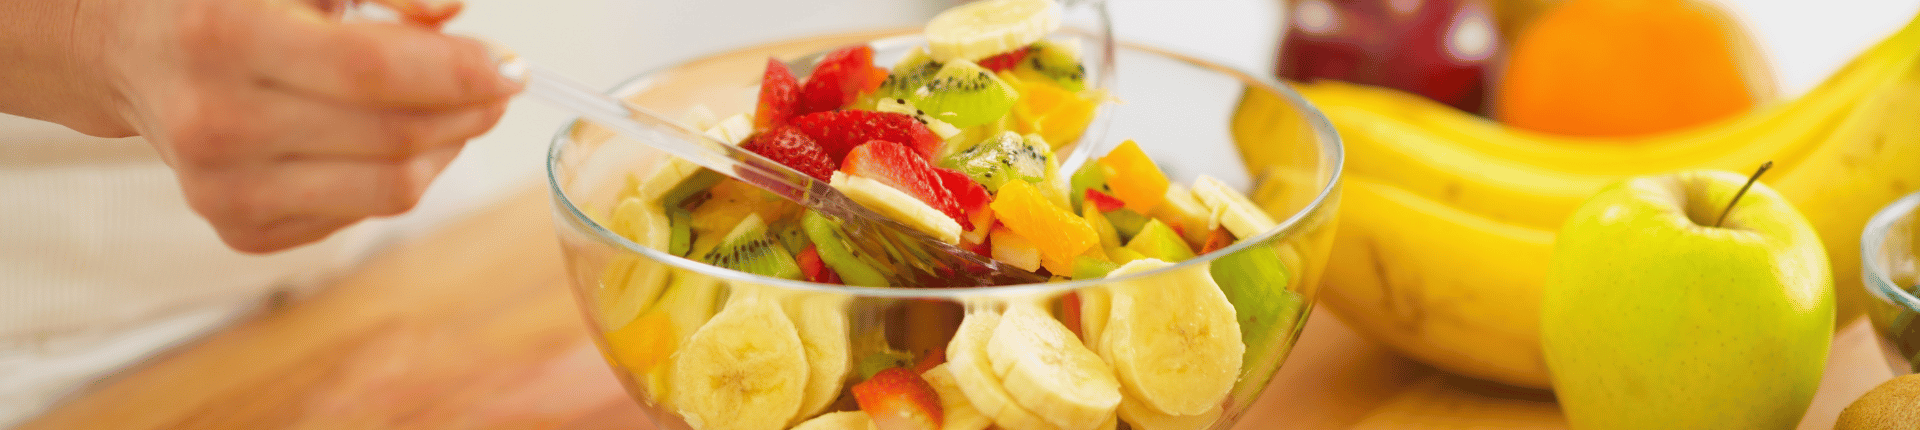 fruits et légumes frais groupe estivin